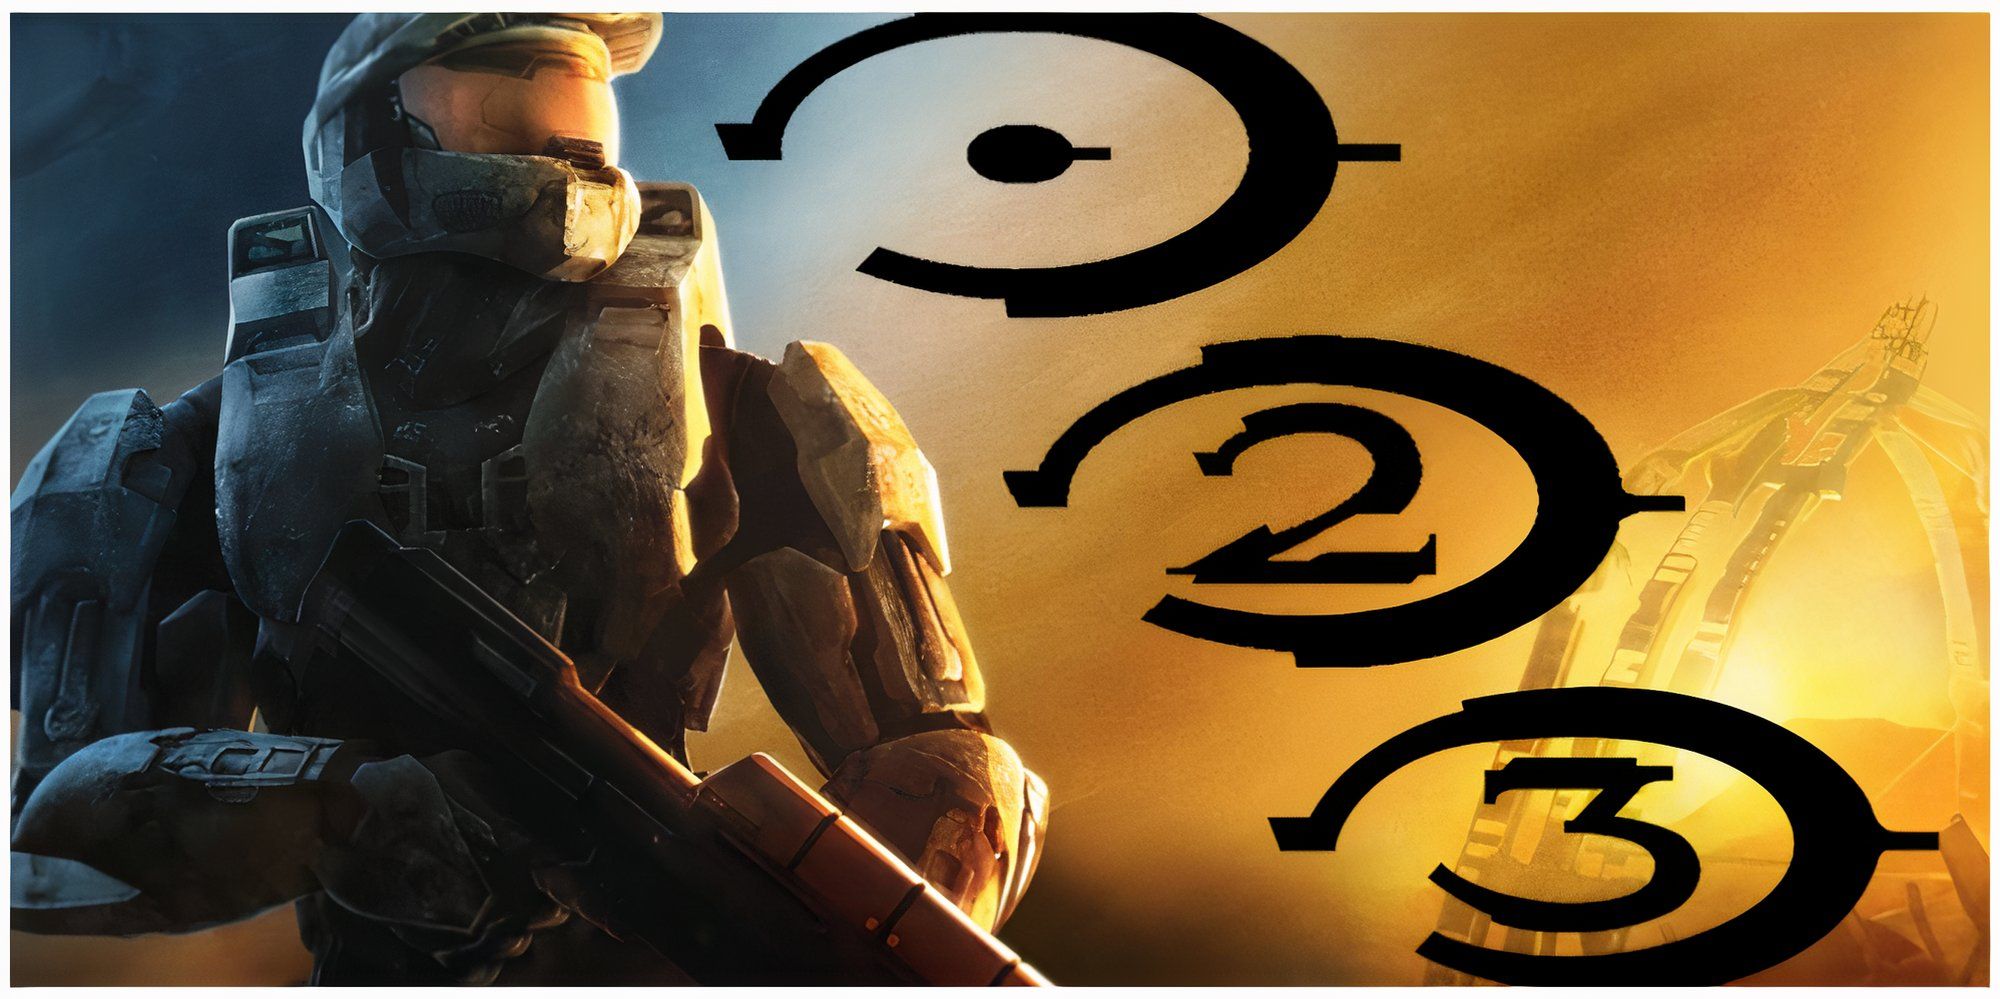 Halo 3: причины сделать ремастер этой игры